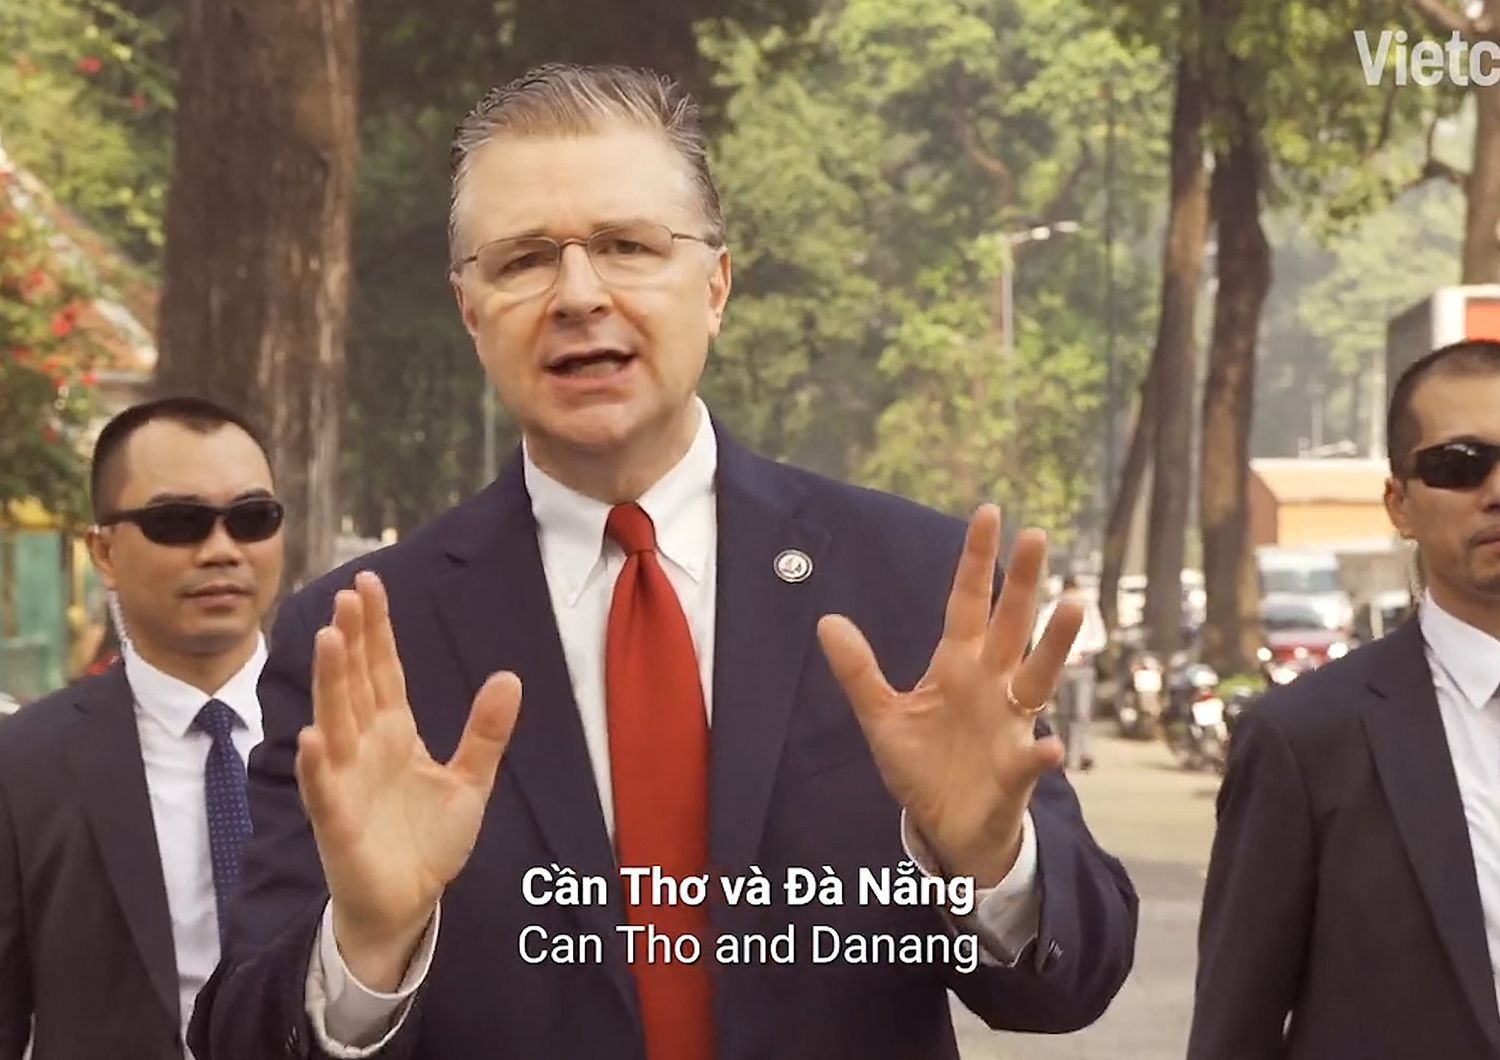 L'ambasciatore Usa in Vietnam, Dan Kritenbrink nella clip